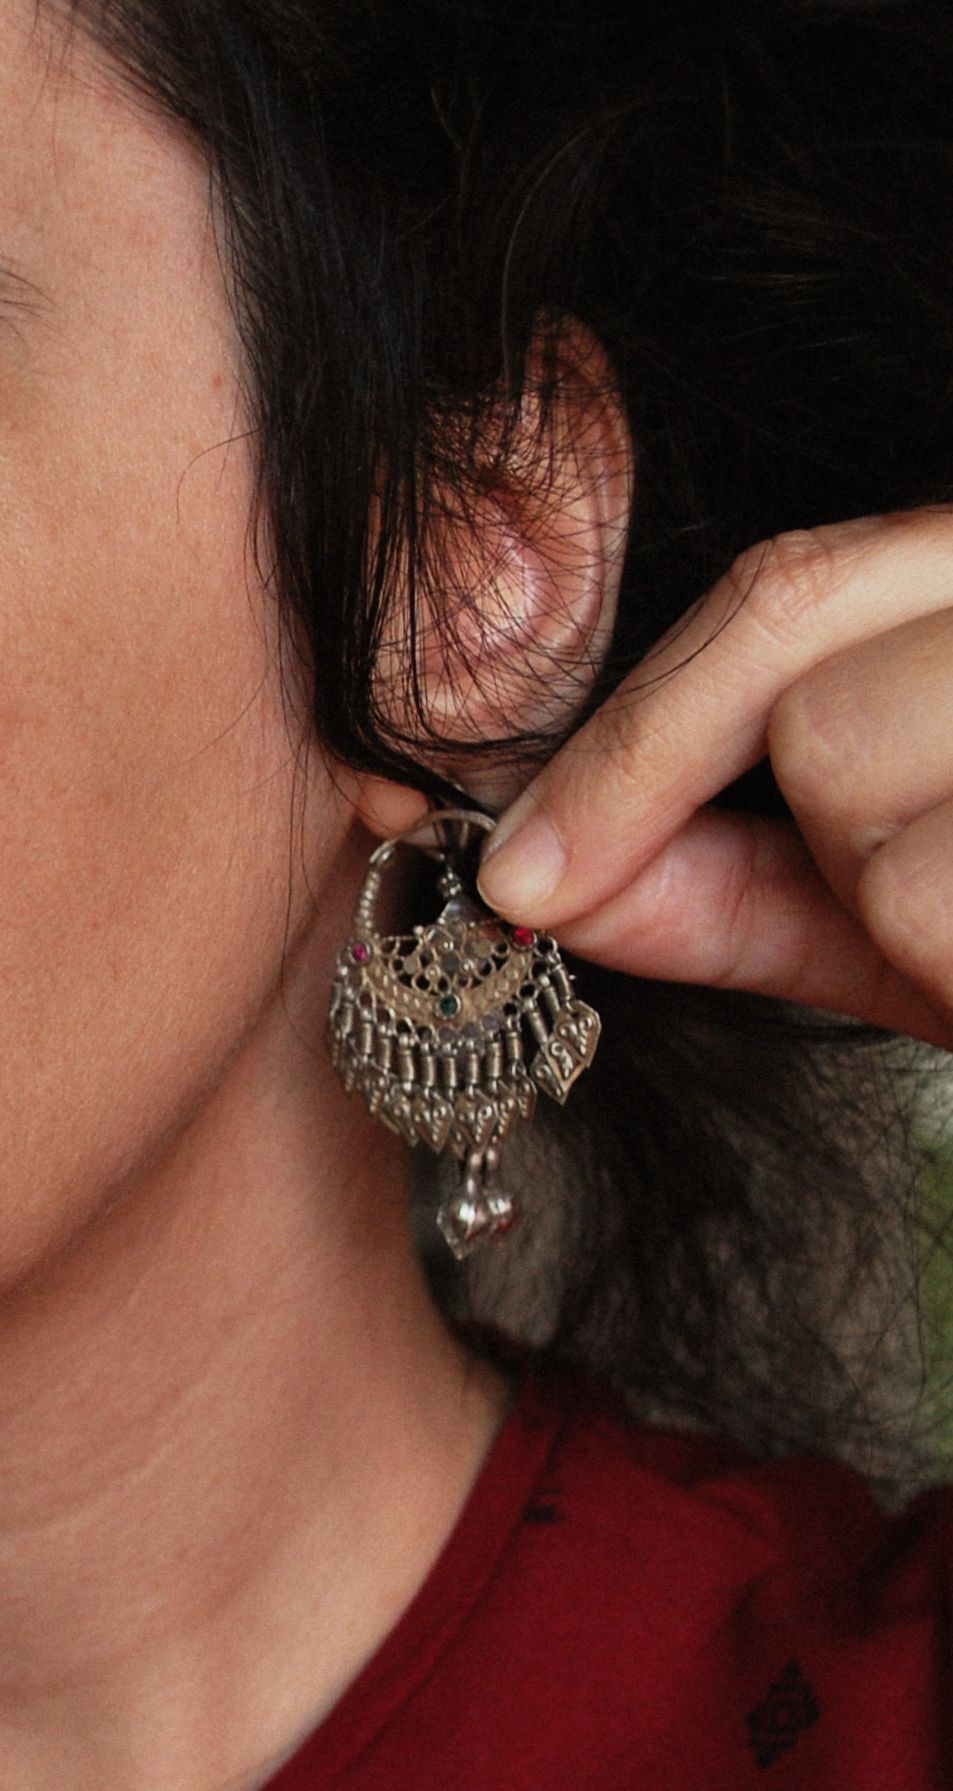 Antique Gilded Afghani Hoop Earrings with Tassels